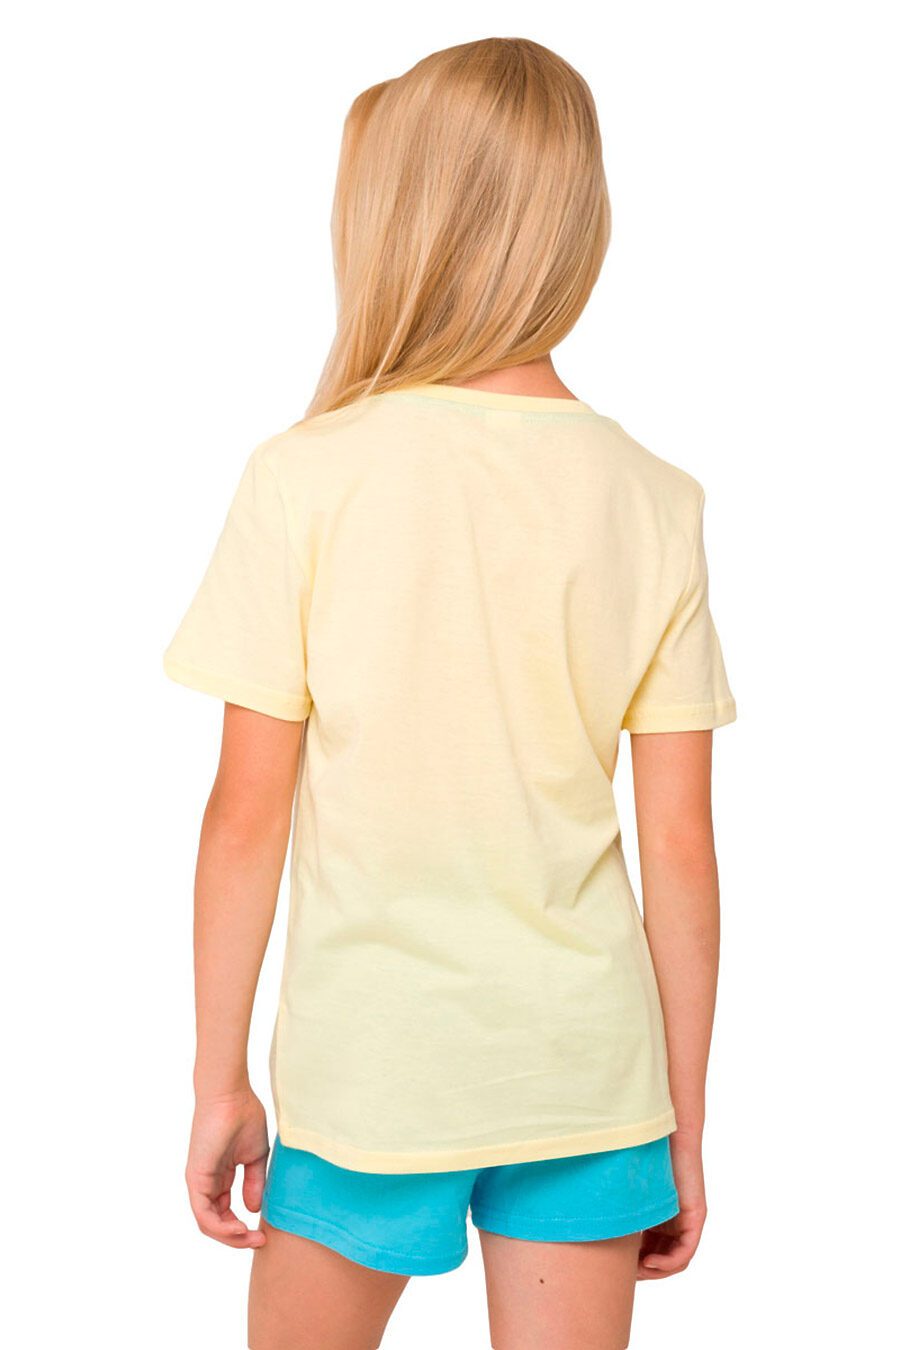 Пижама (футболка+шорты) для девочек N.O.A. 666276 купить оптом от производителя. Совместная покупка детской одежды в OptMoyo